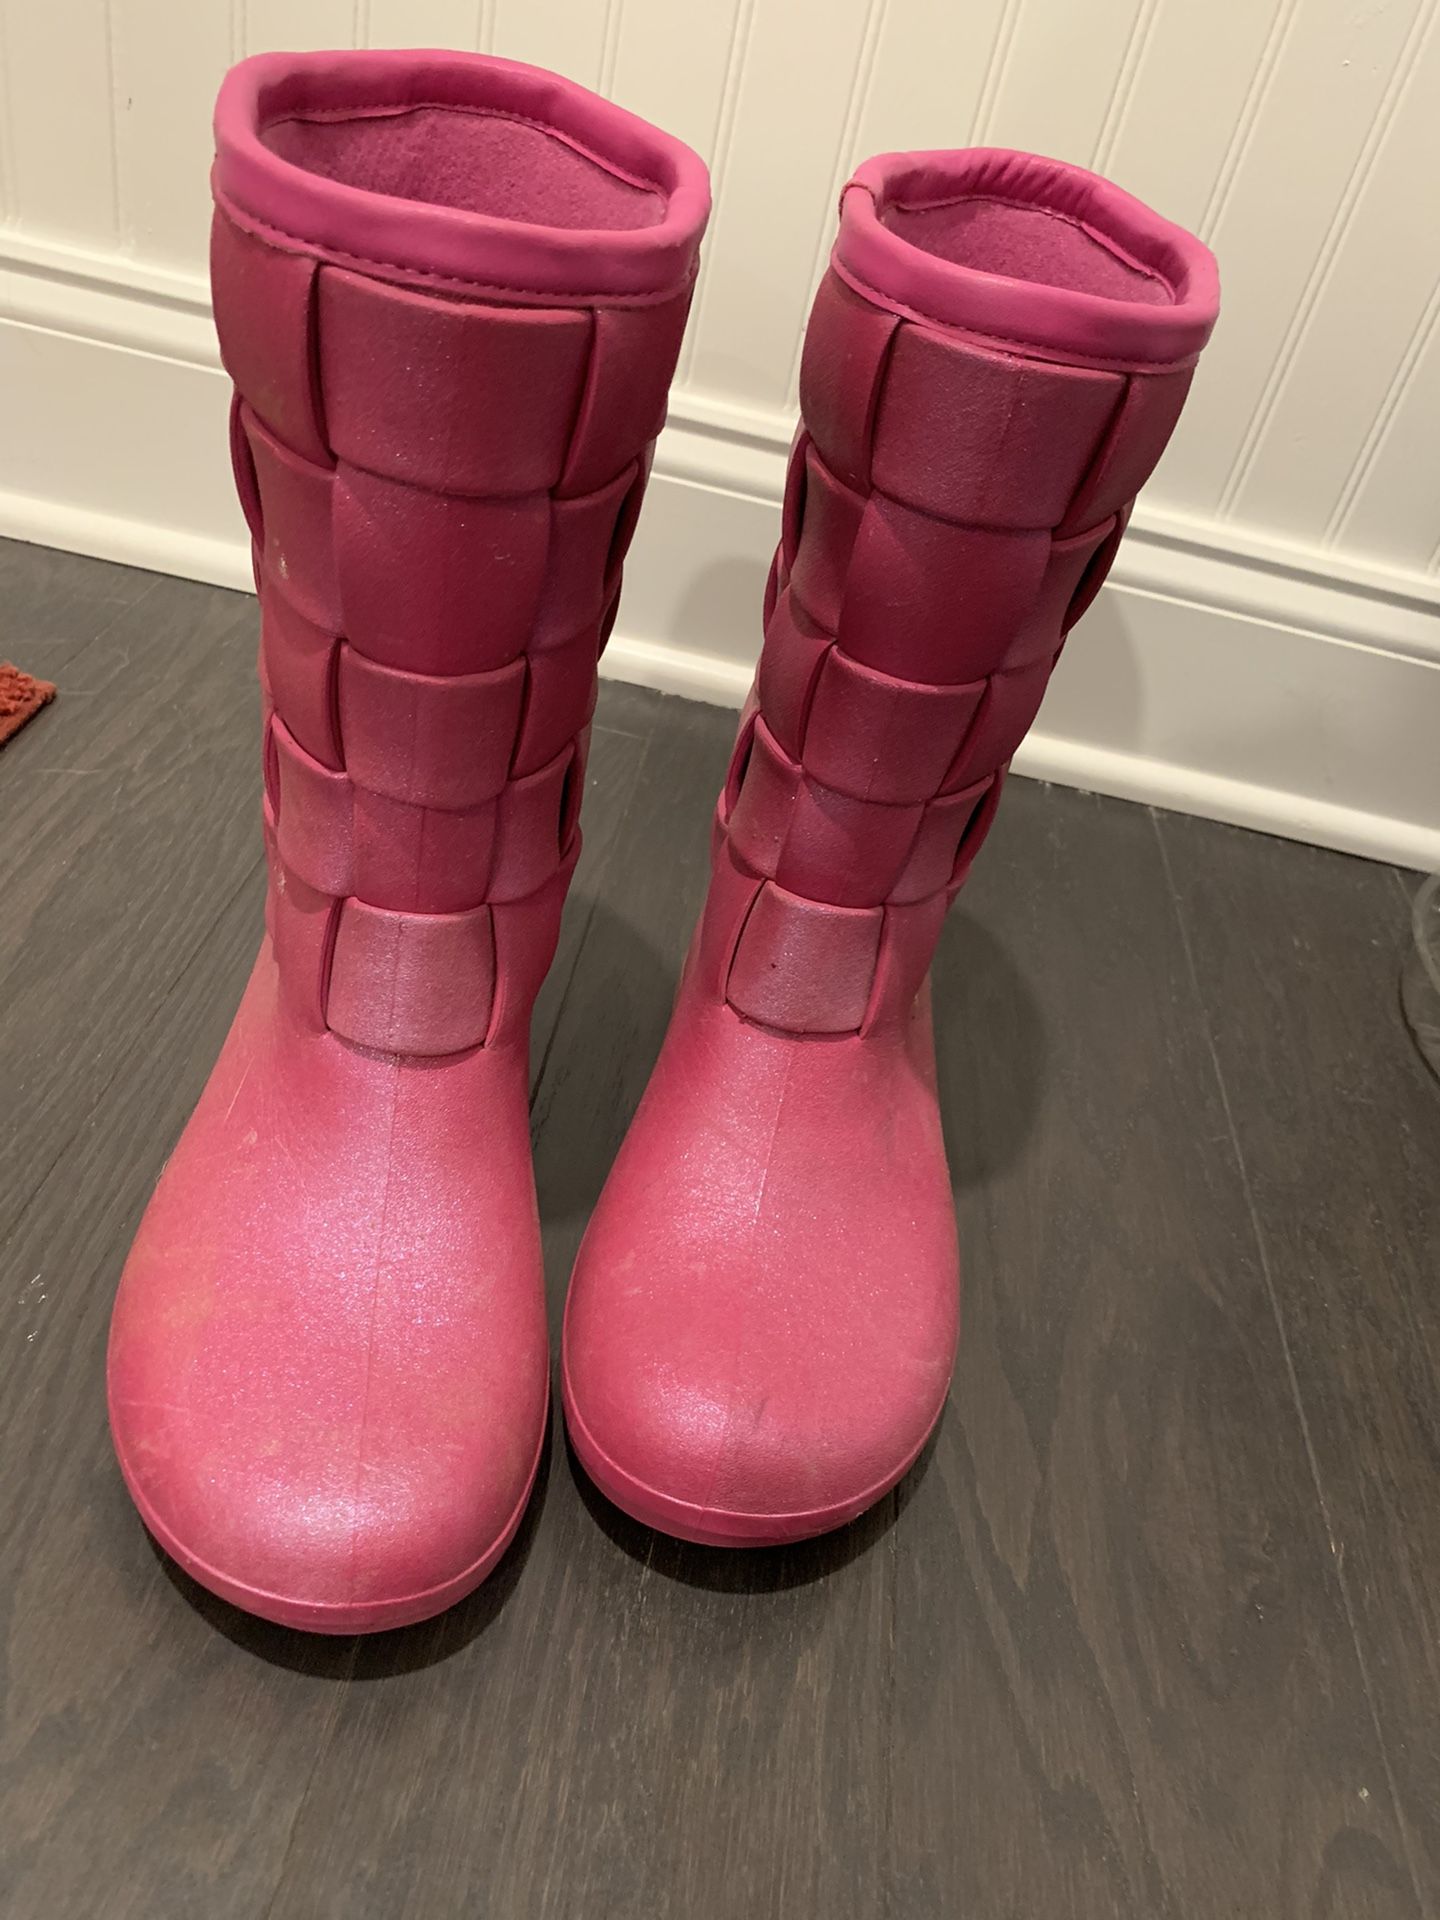 Crocs rain boots— $10